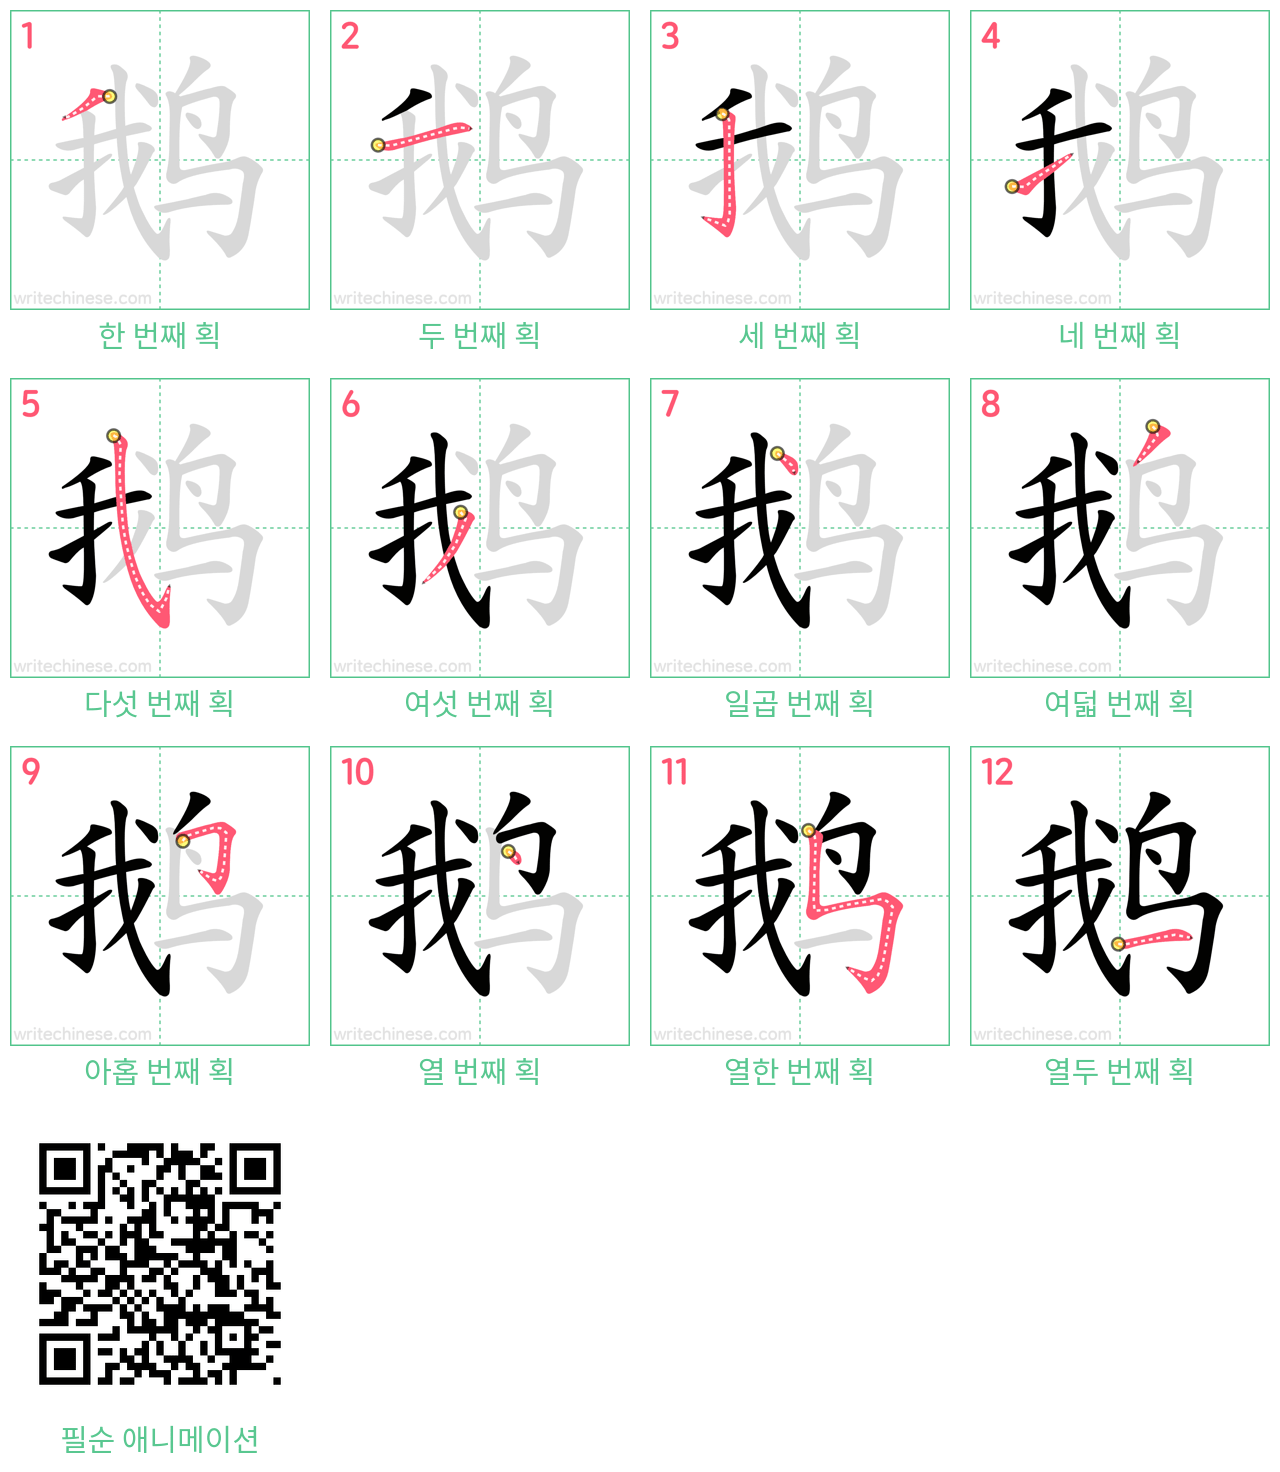 鹅 step-by-step stroke order diagrams